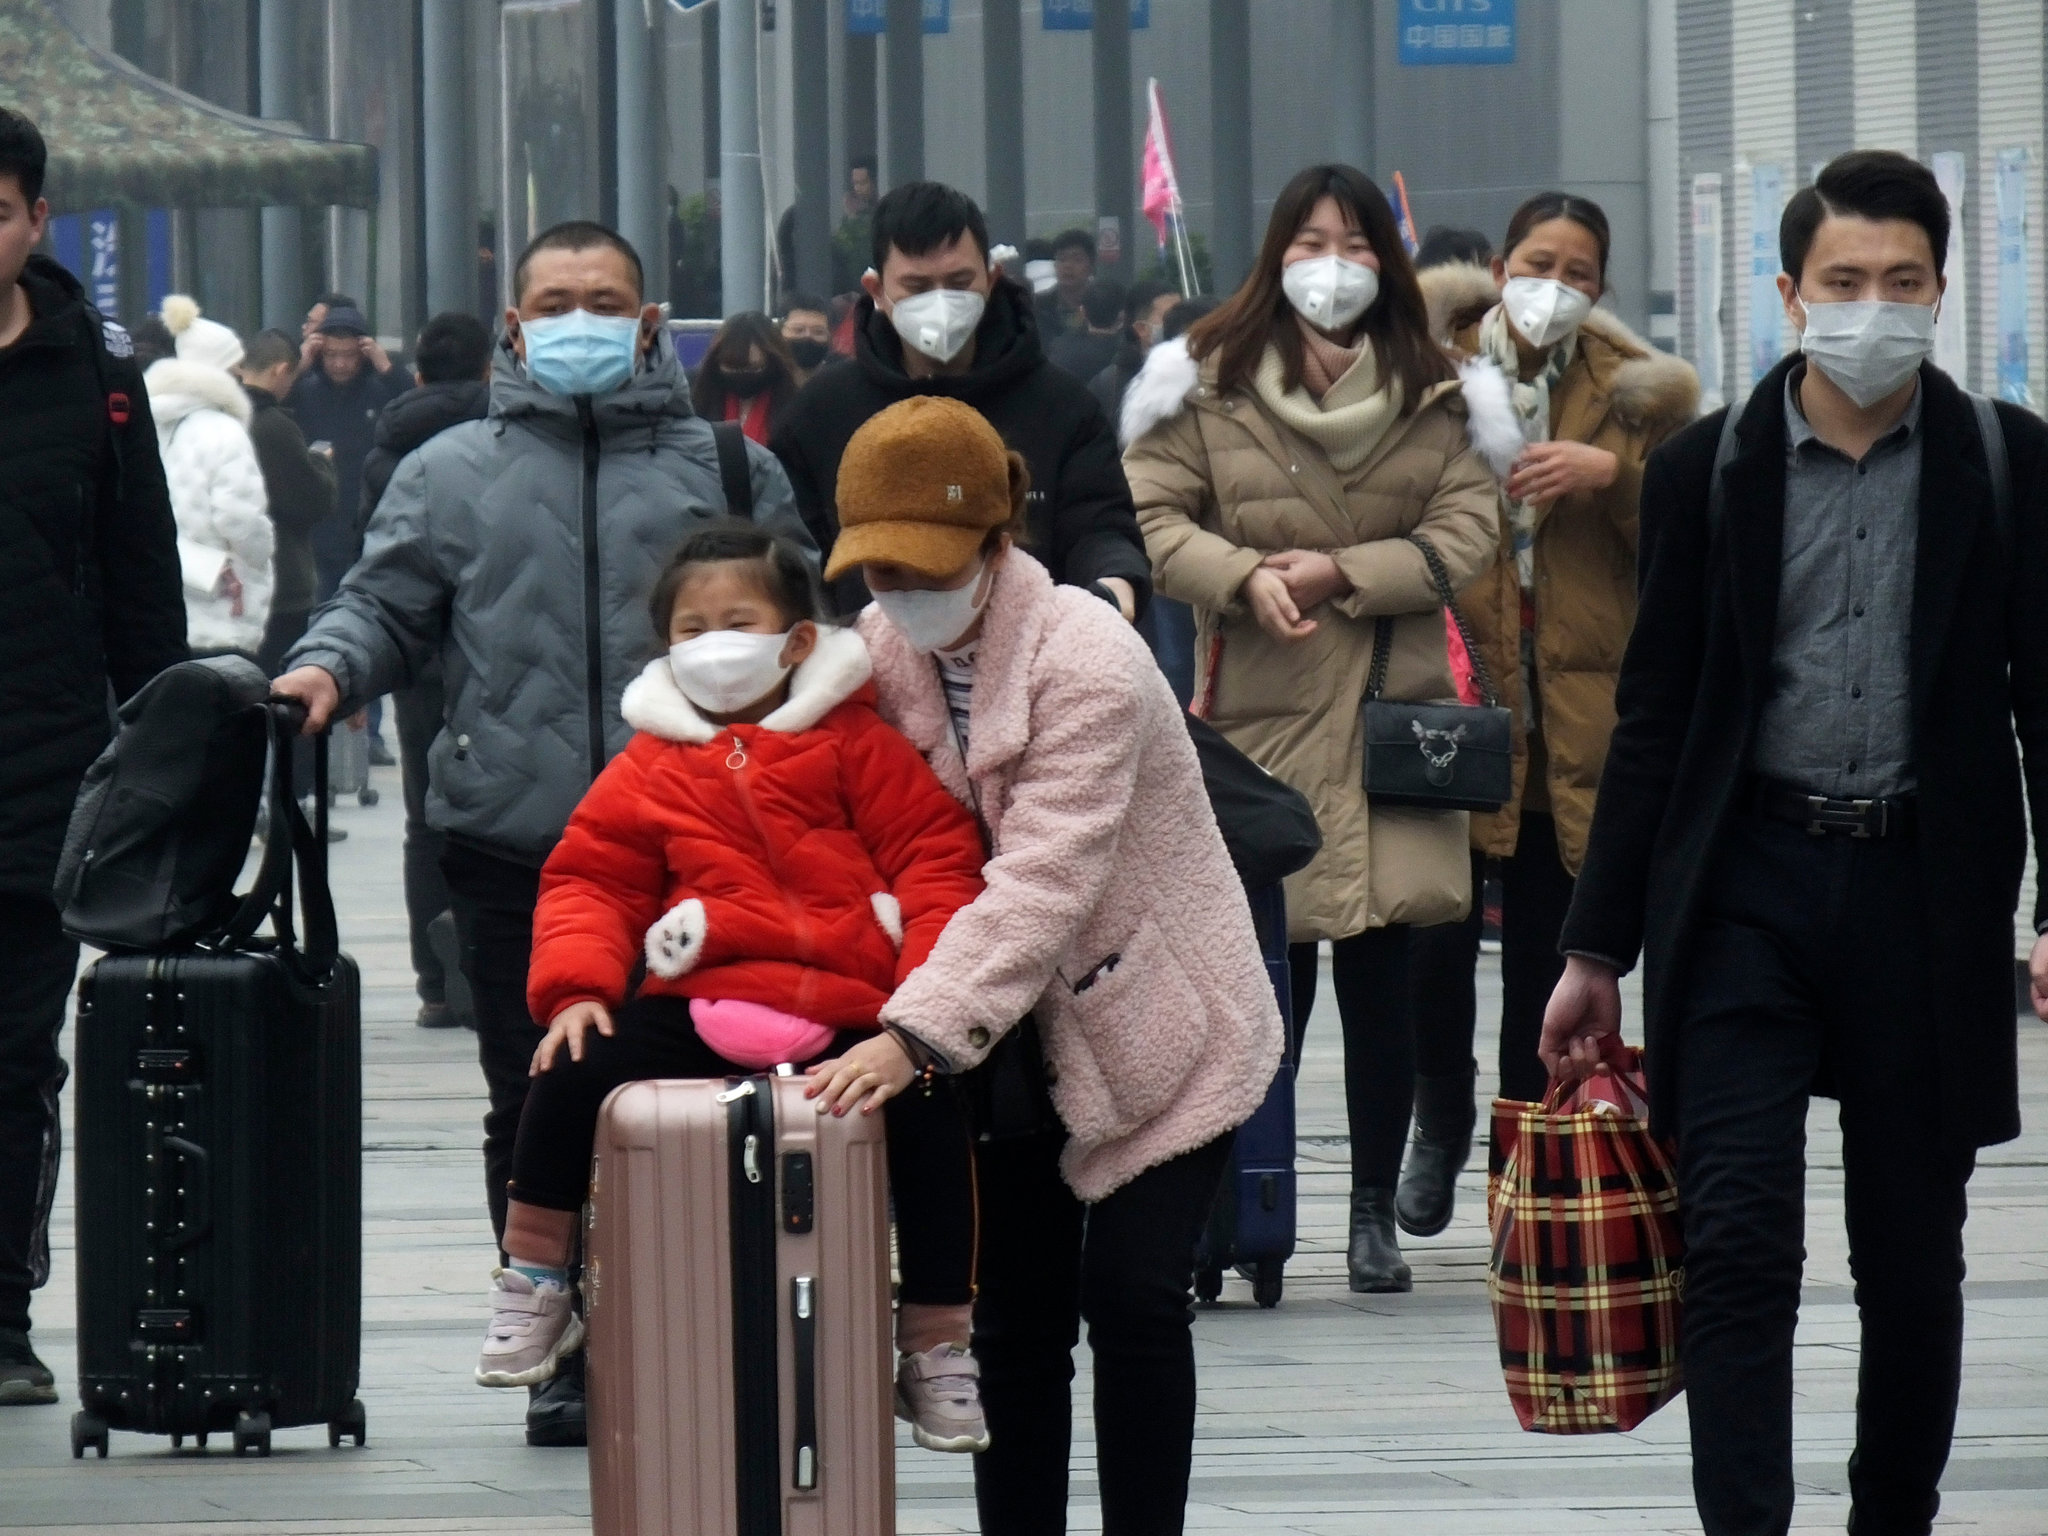 Κορονοϊός: Πιθανότερη η μόλυνση εντός της οικογένειας παρά από επαφές εκτός σπιτιού